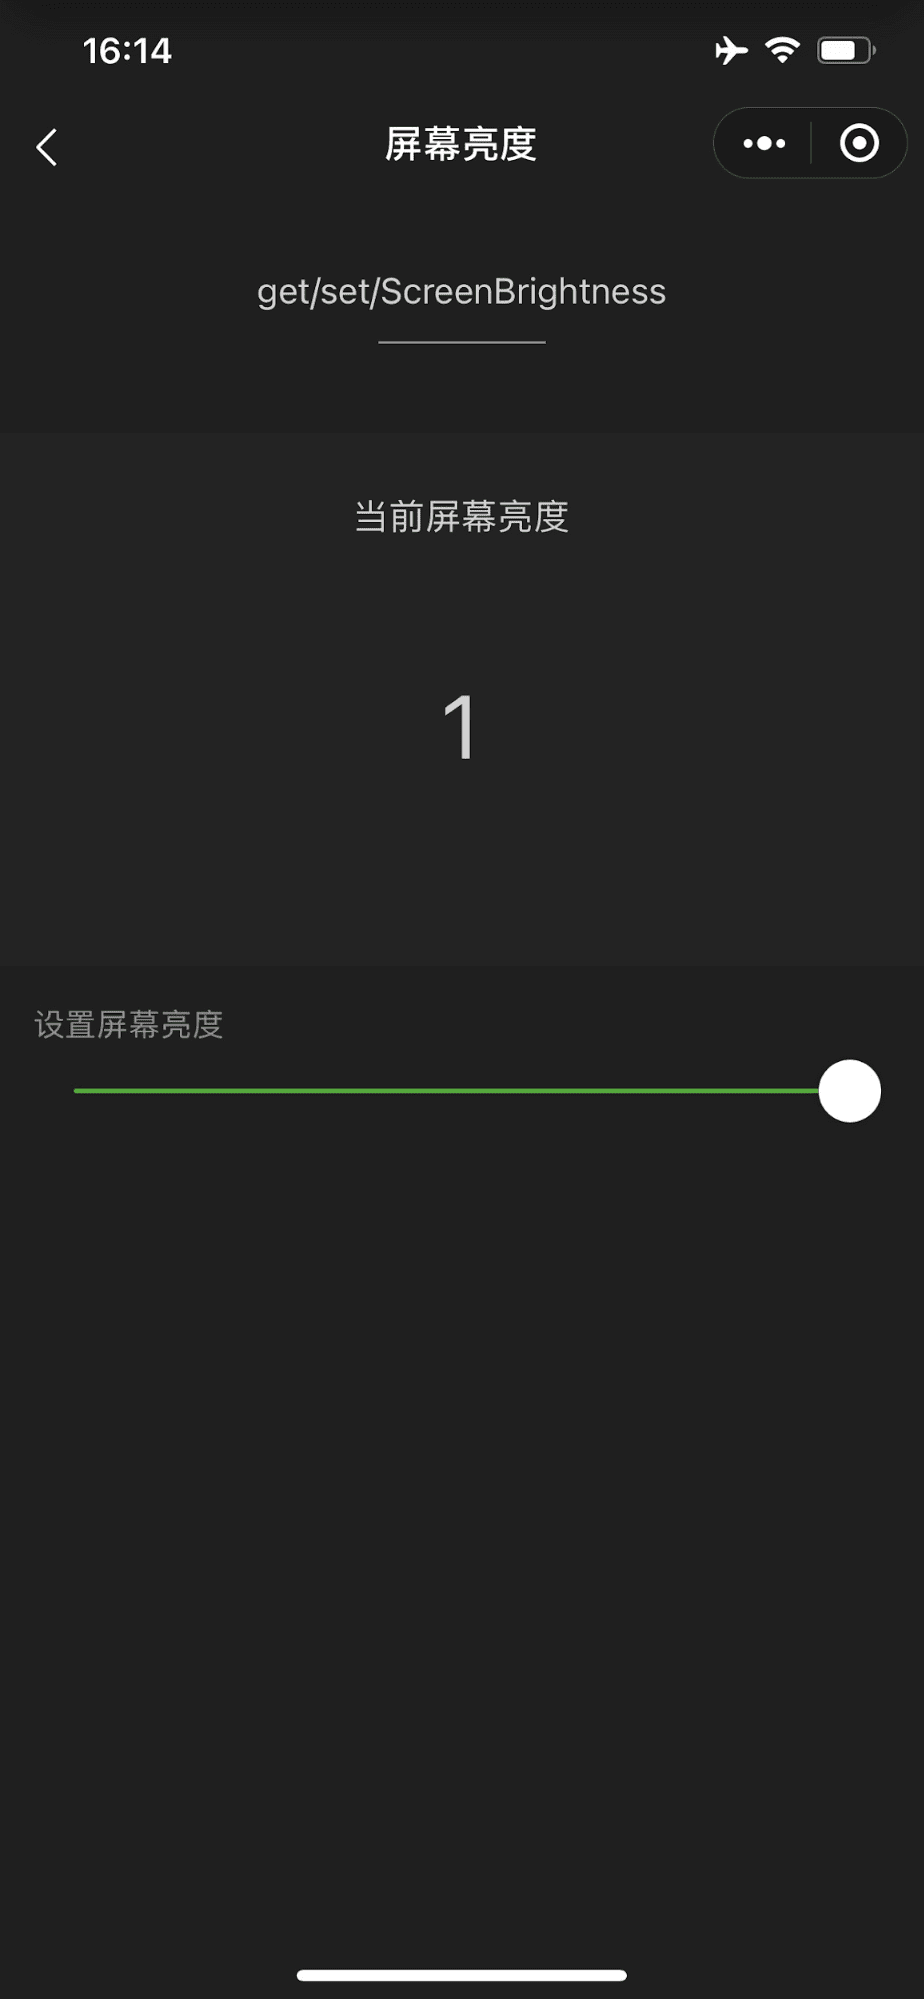 Демонстрационное мини-приложение WeChat, показывающее ползунок, управляющий яркостью экрана устройства, выдвинутым на максимум.